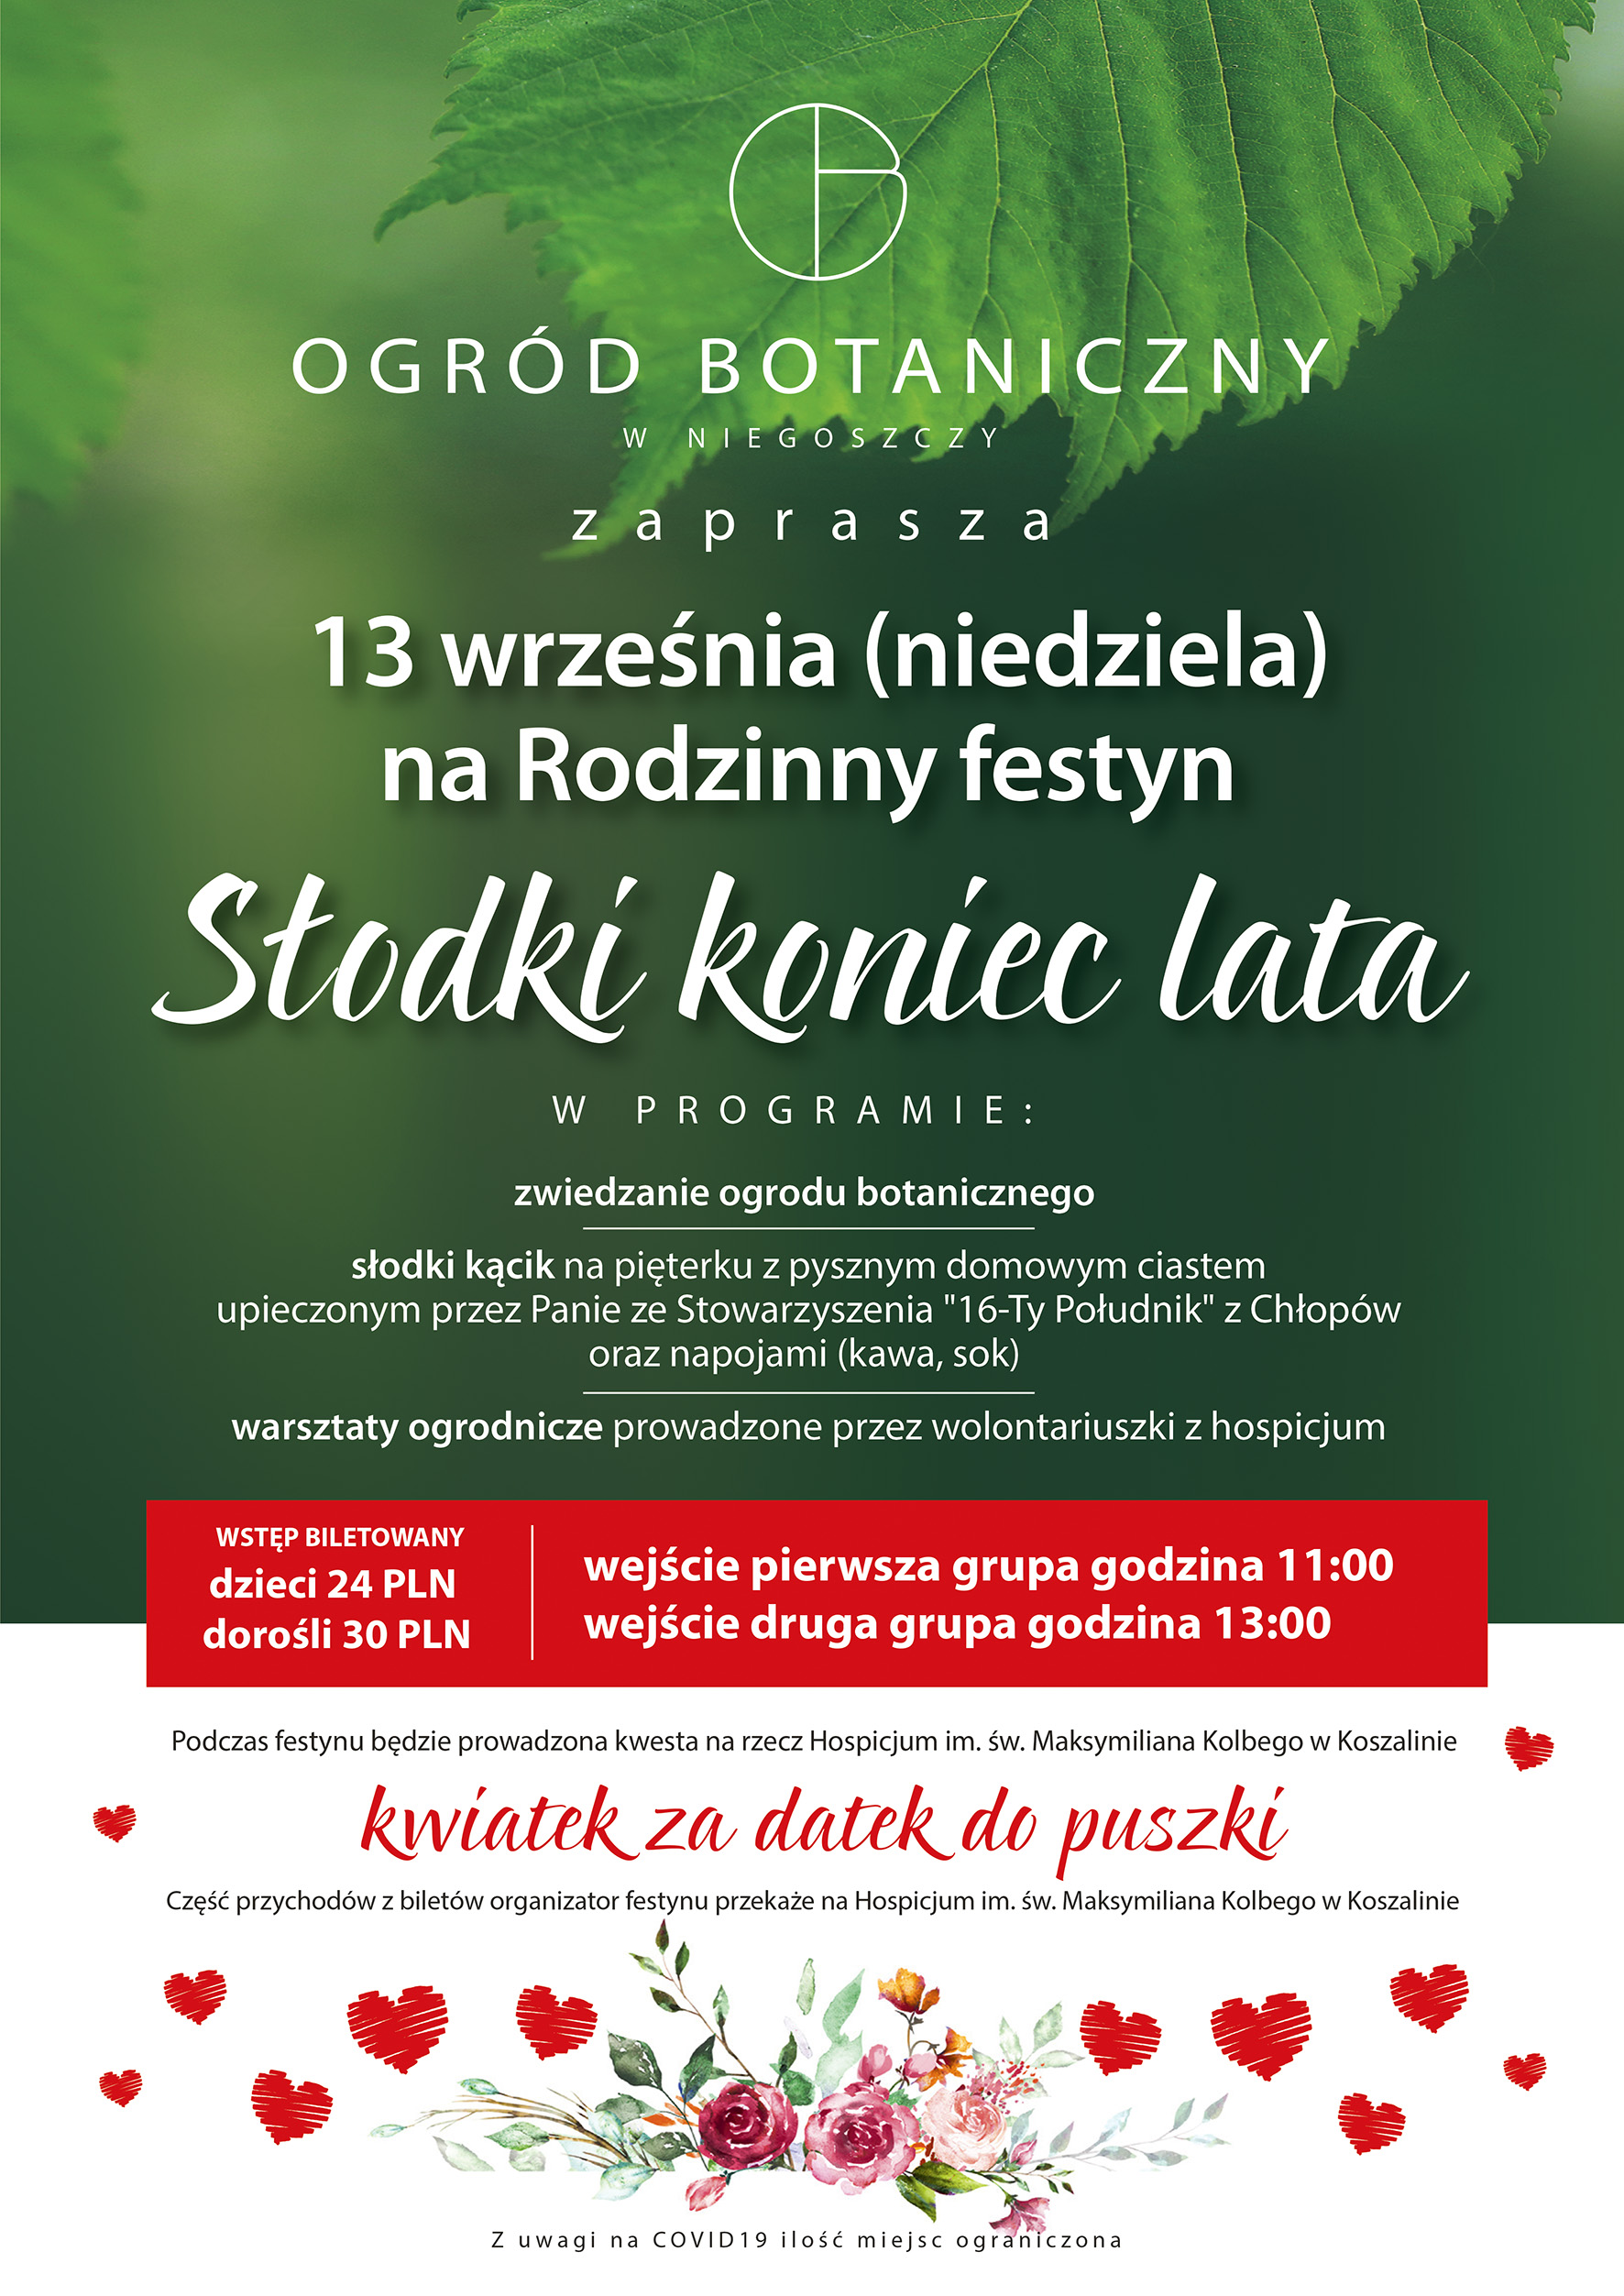 plakat informacyjny Zapraszający na Festyn rodzinny Słodki koniec lata w Ogrodzie Botanicznym w Niegoszcy 13 września od godz 11:00